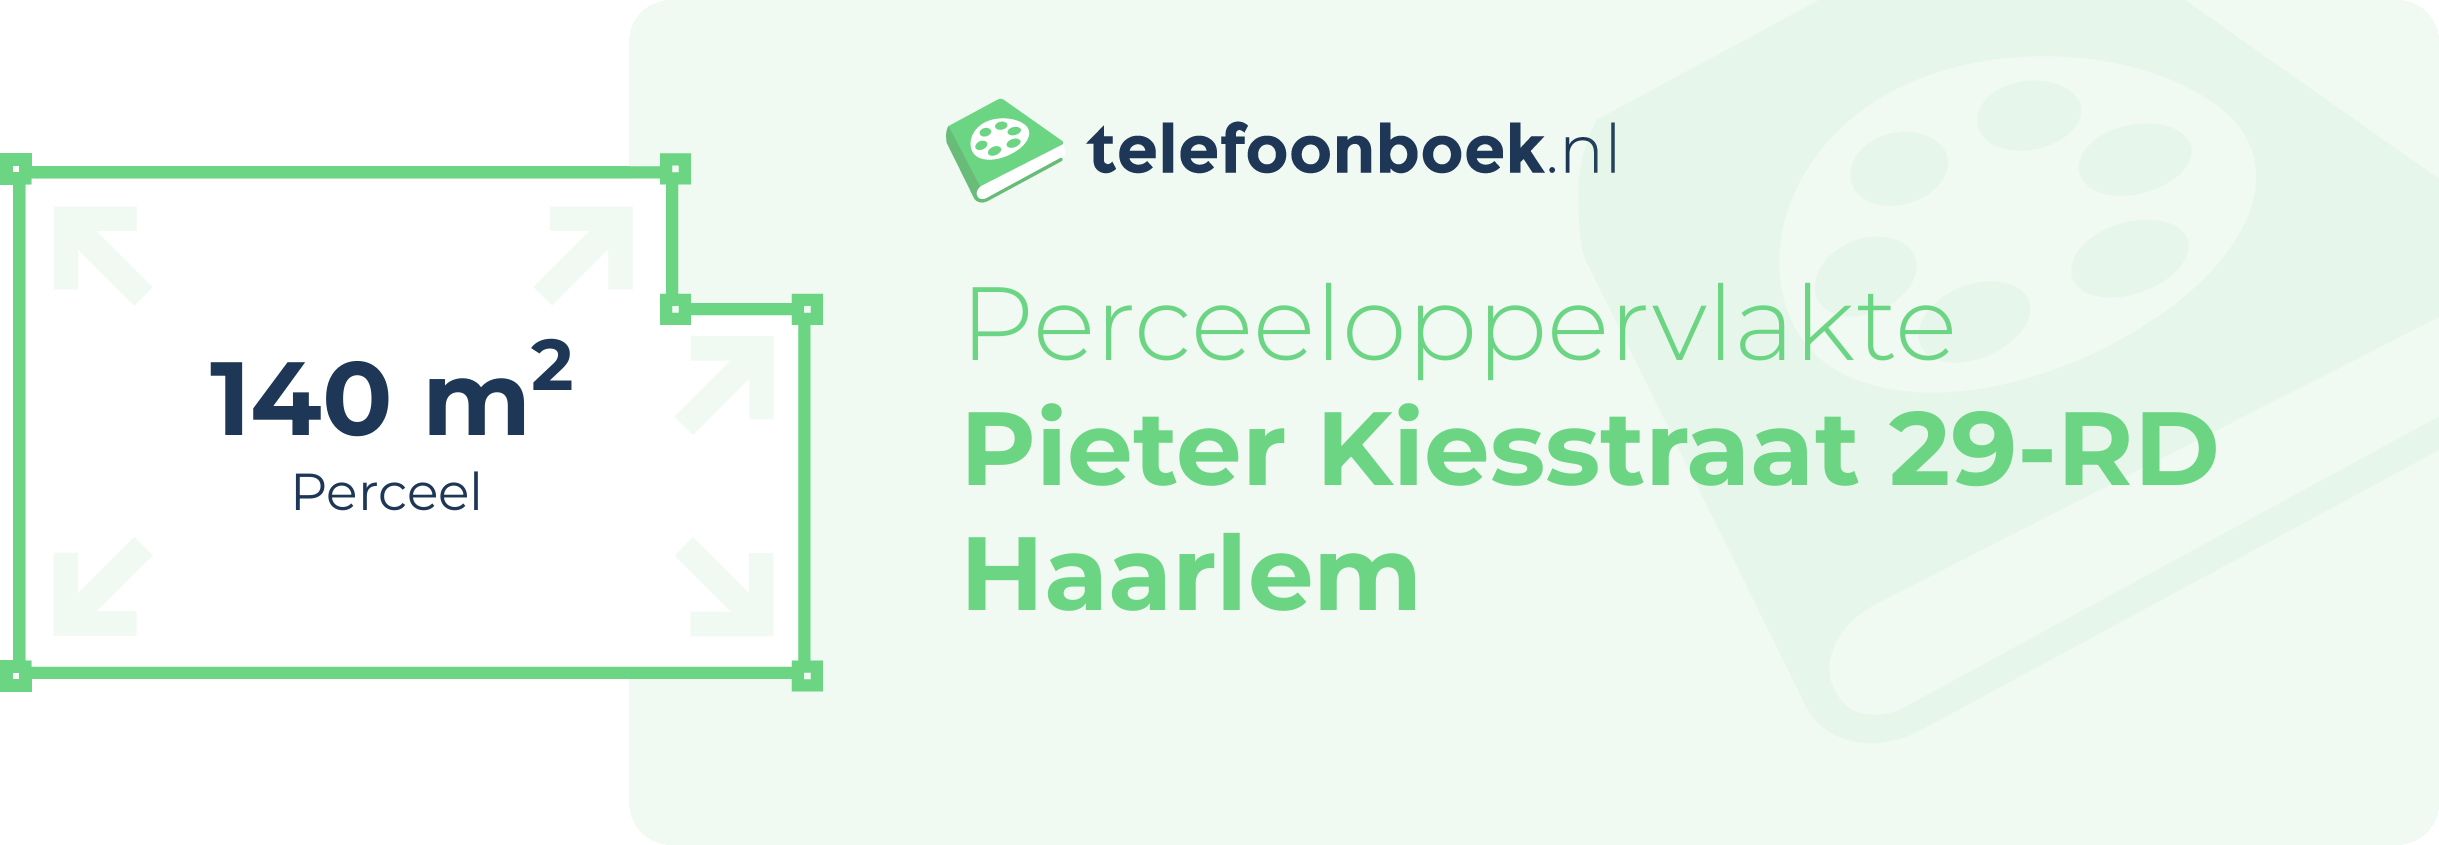 Perceeloppervlakte Pieter Kiesstraat 29-RD Haarlem